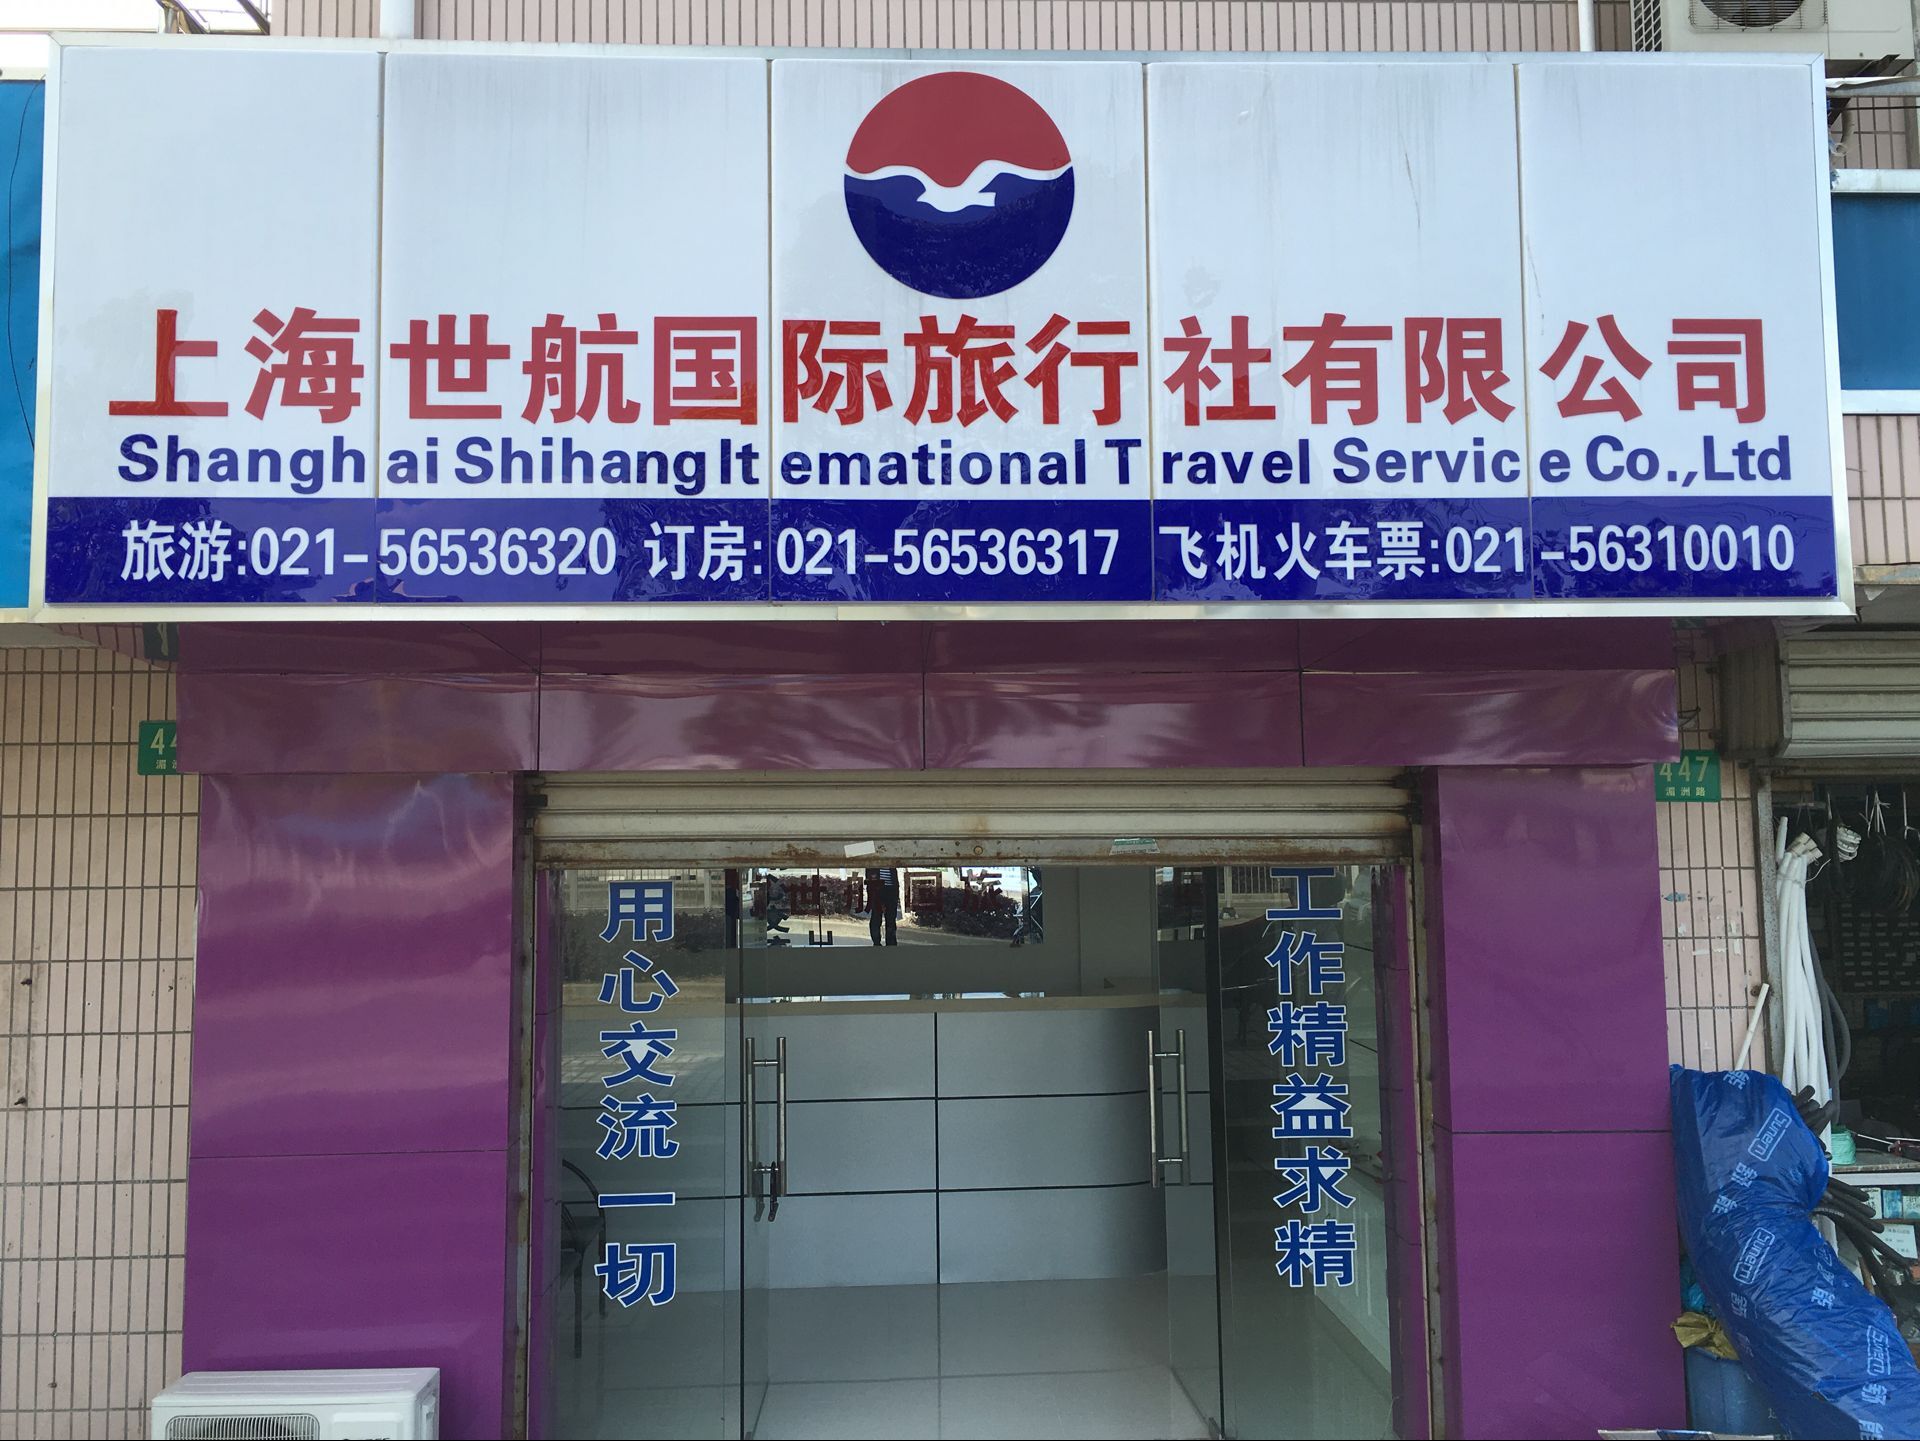 上海二手车公司排名_上海三方理财公司排名_上海旅游公司排名